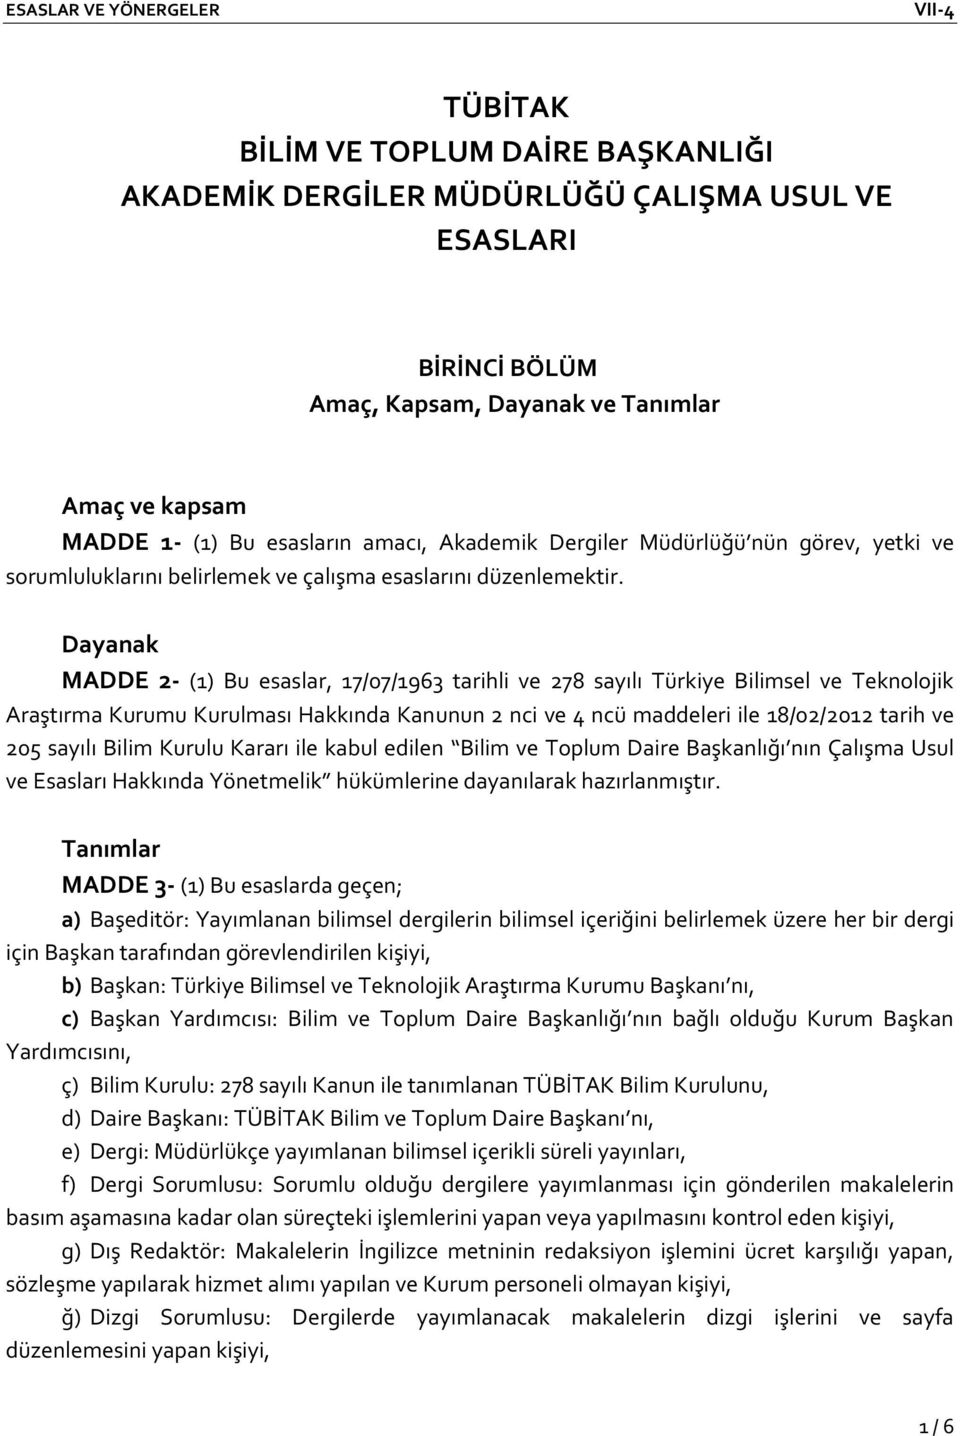 Dayanak MADDE 2- (1) Bu esaslar, 17/07/1963 tarihli ve 278 sayılı Türkiye Bilimsel ve Teknolojik Araştırma Kurumu Kurulması Hakkında Kanunun 2 nci ve 4 ncü maddeleri ile 18/02/2012 tarih ve 205